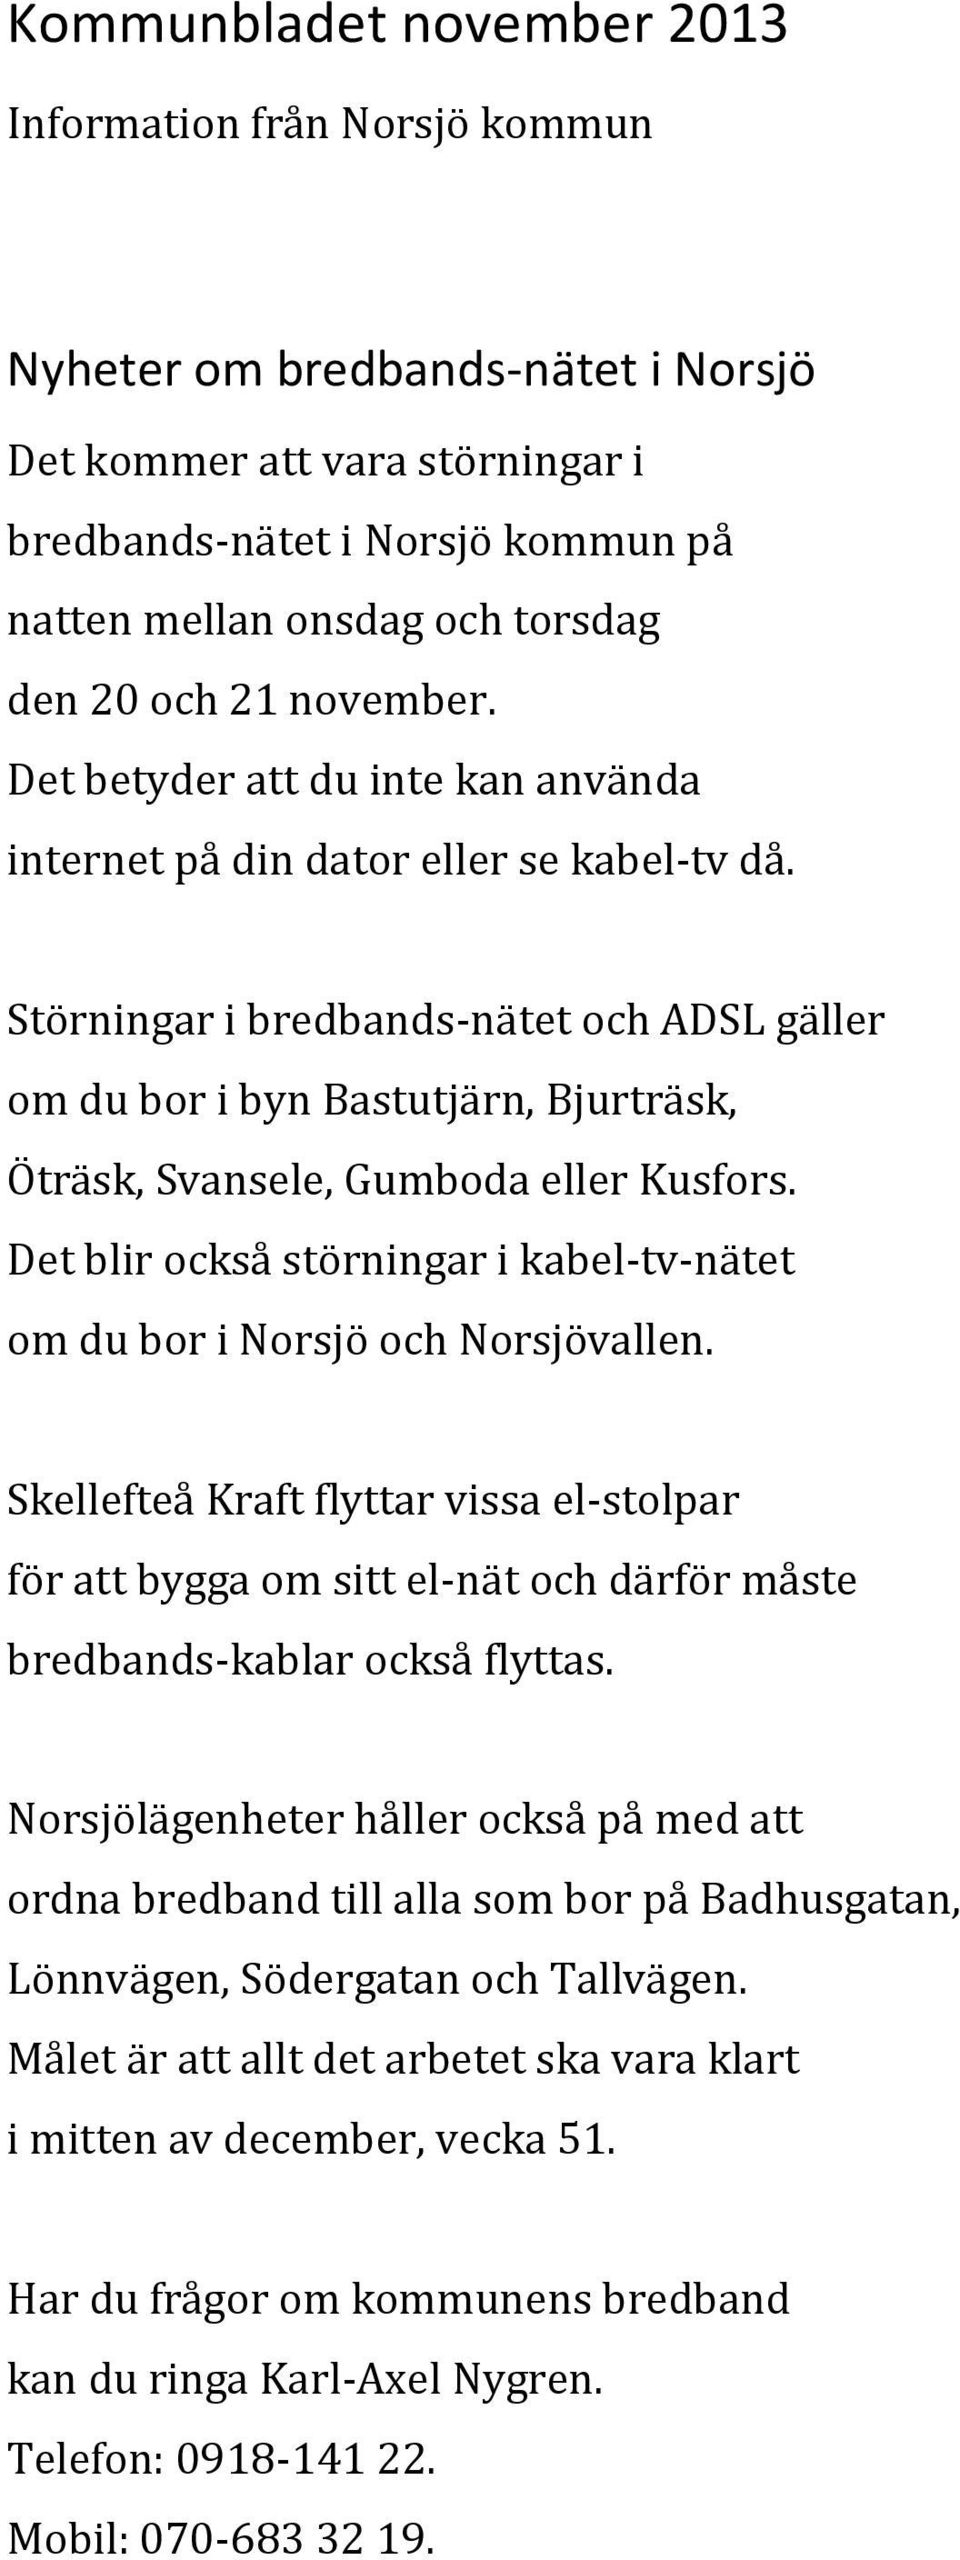 Störningar i bredbands-nätet och ADSL gäller om du bor i byn Bastutjärn, Bjurträsk, Öträsk, Svansele, Gumboda eller Kusfors.